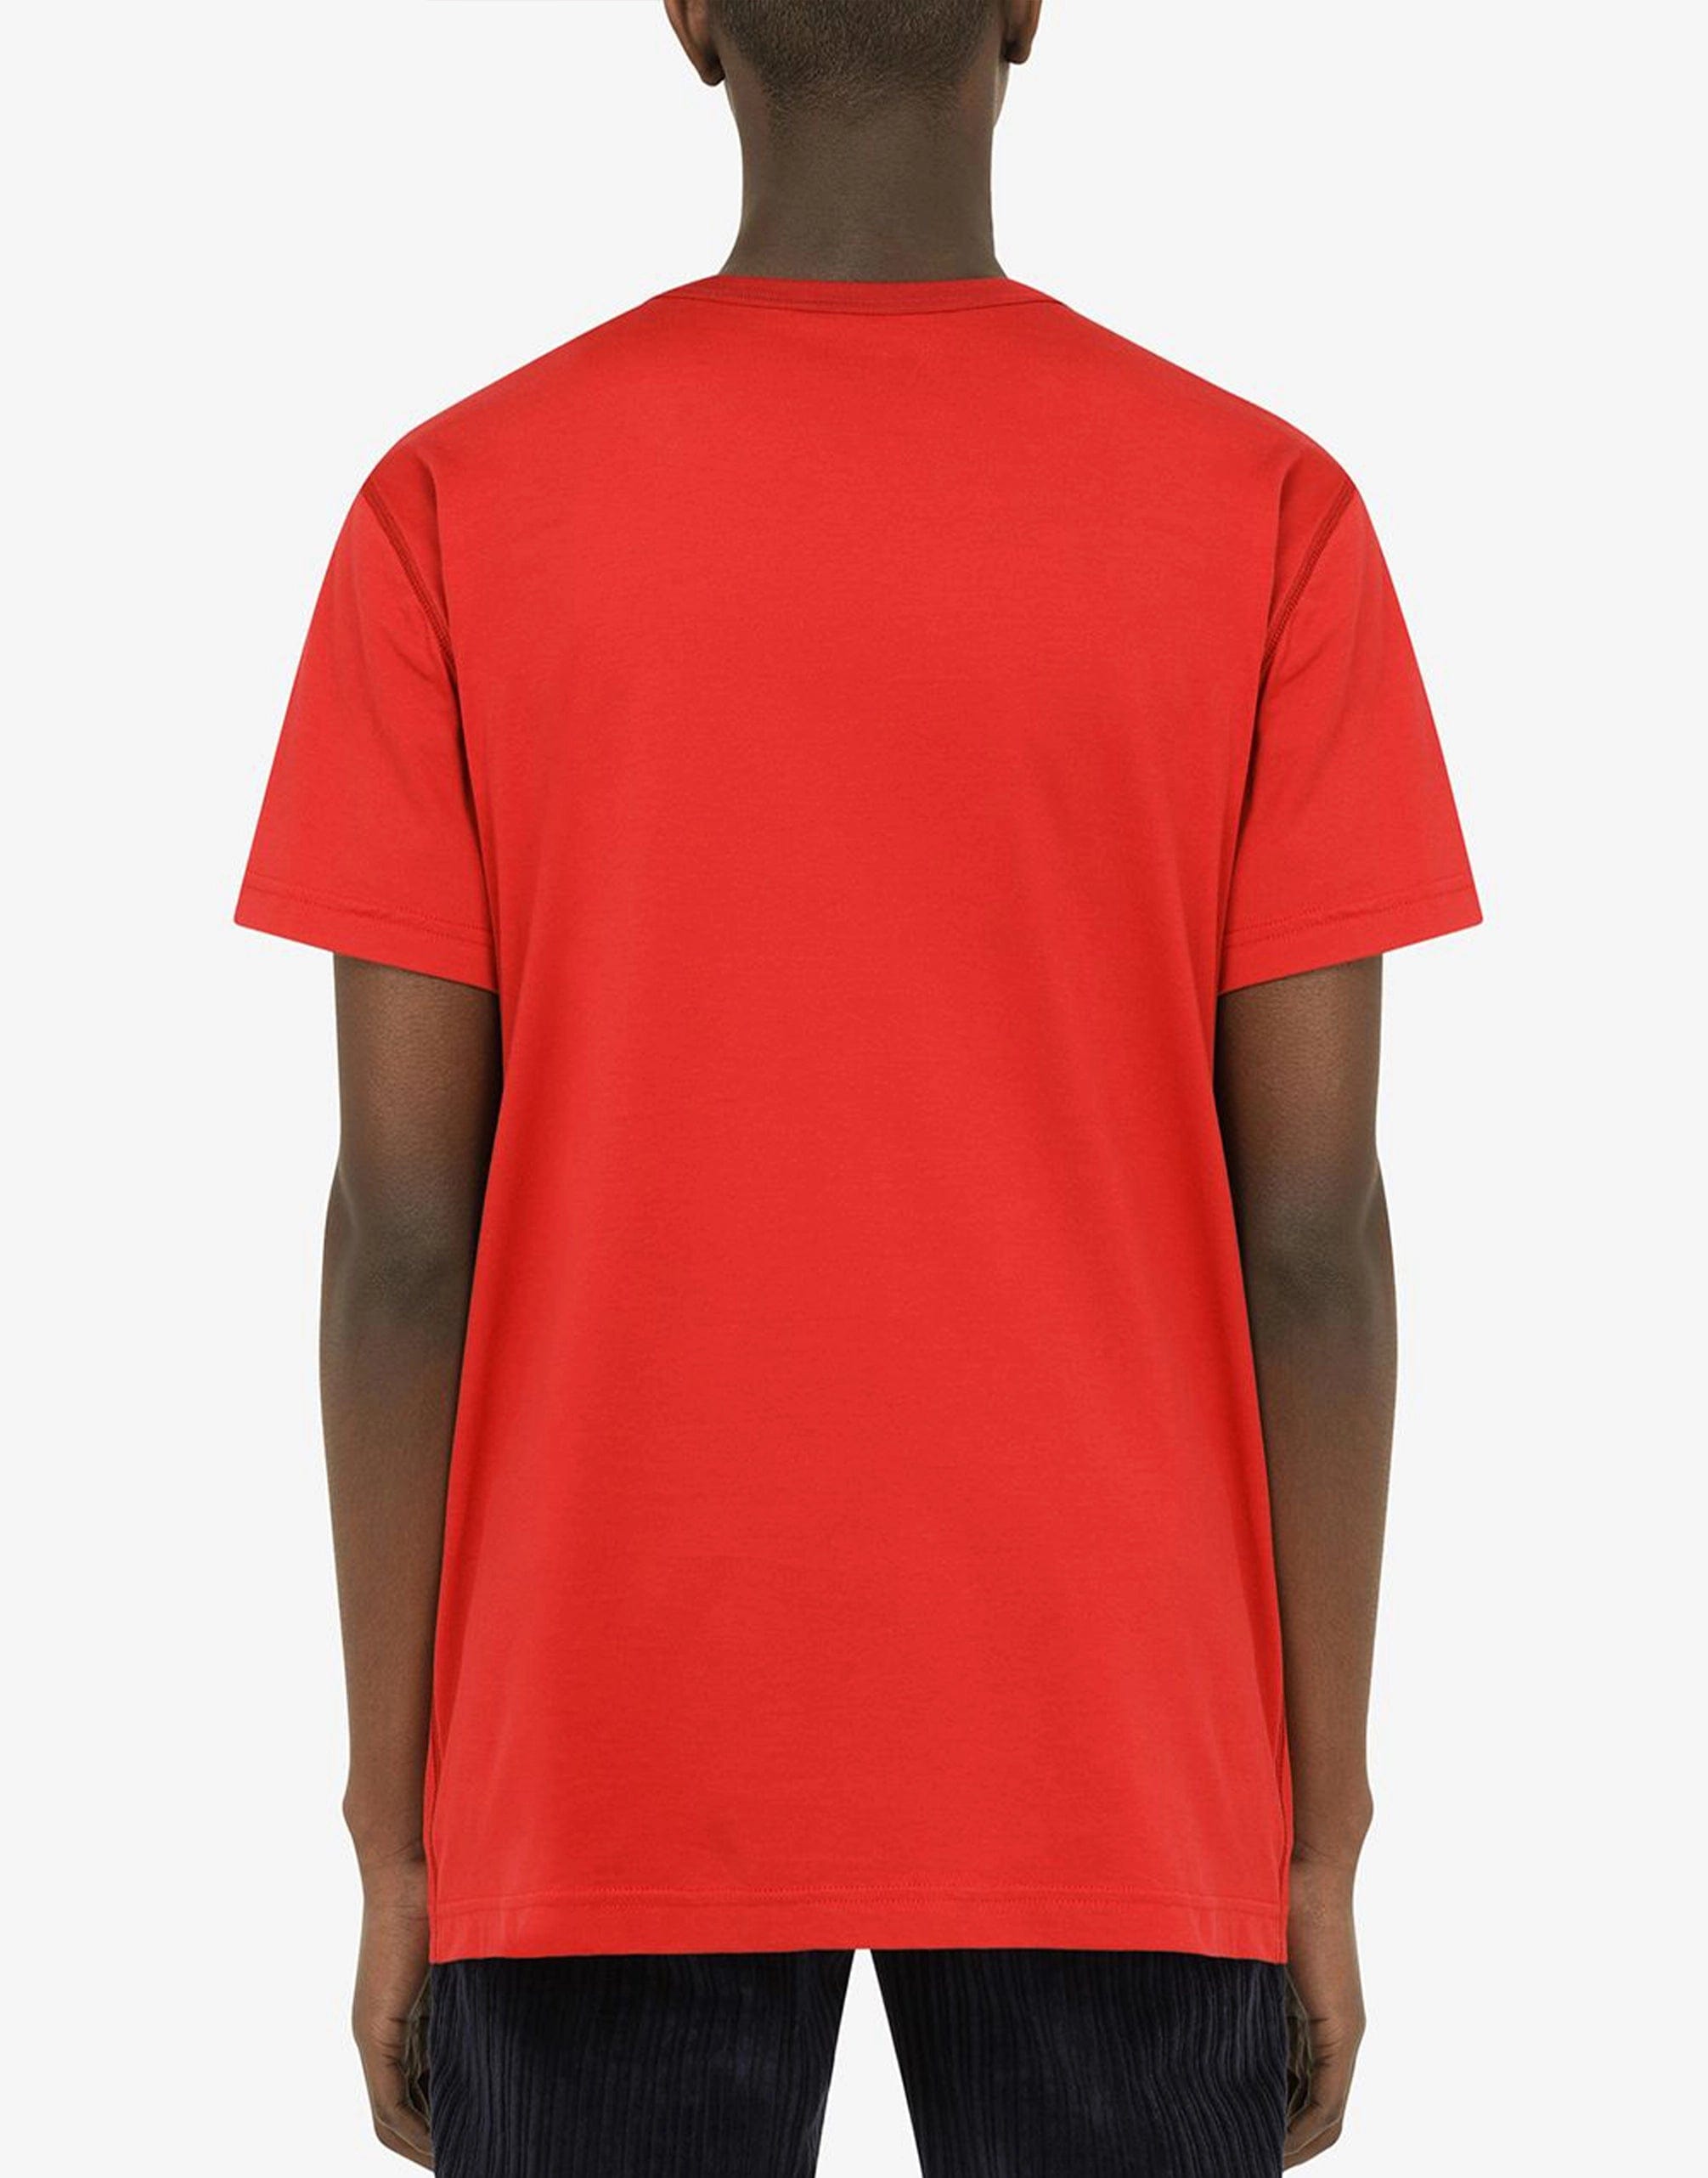 赤いブランドプレート付きの綿Tシャツ